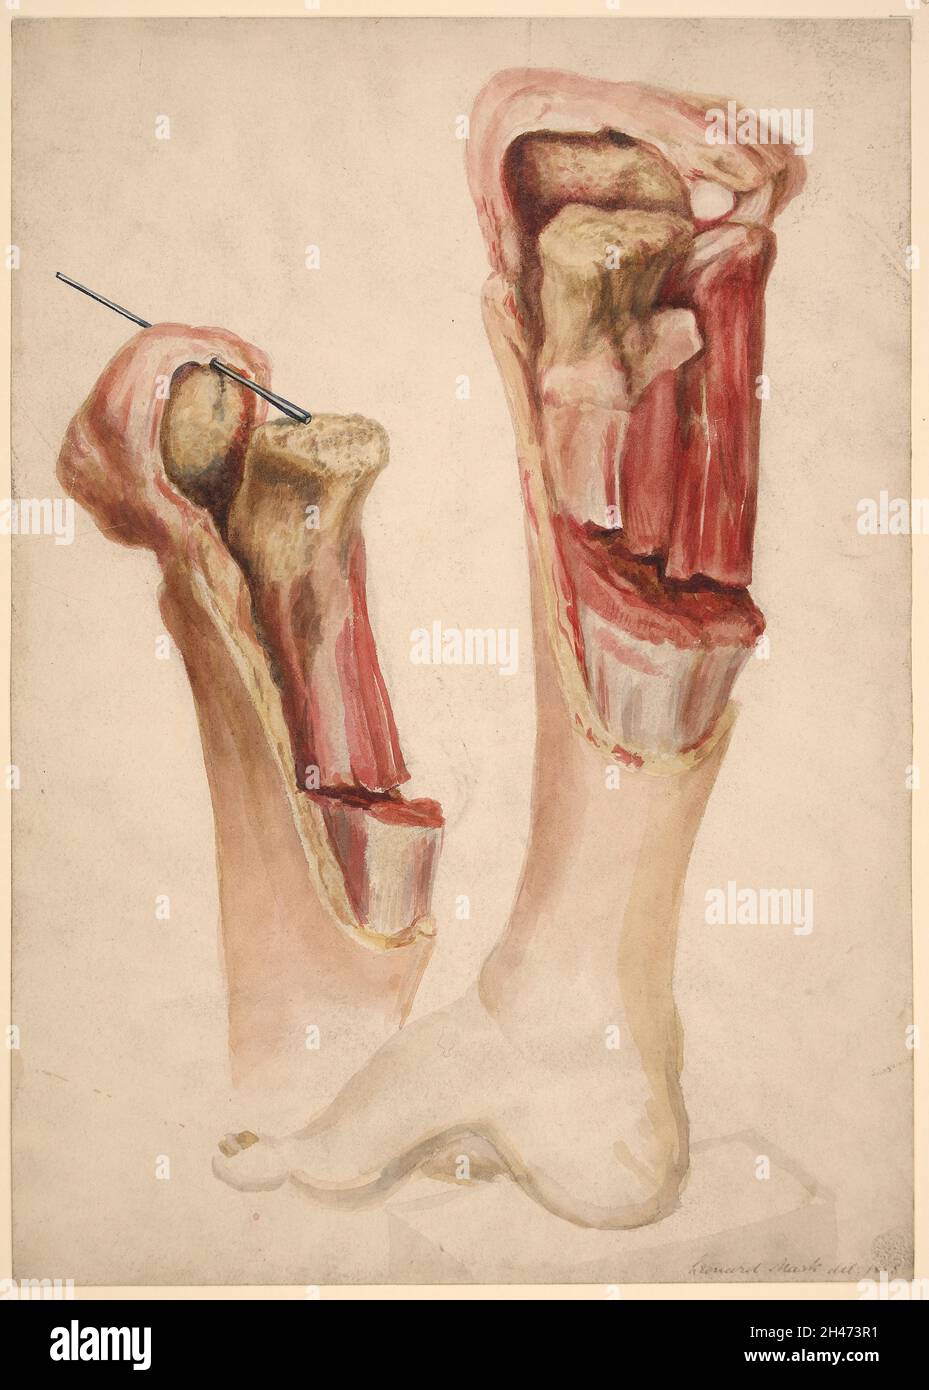 Pied et jambe d'un garçon qui avait une inflammation aiguë de l'épiphyse supérieure du tibia Banque D'Images